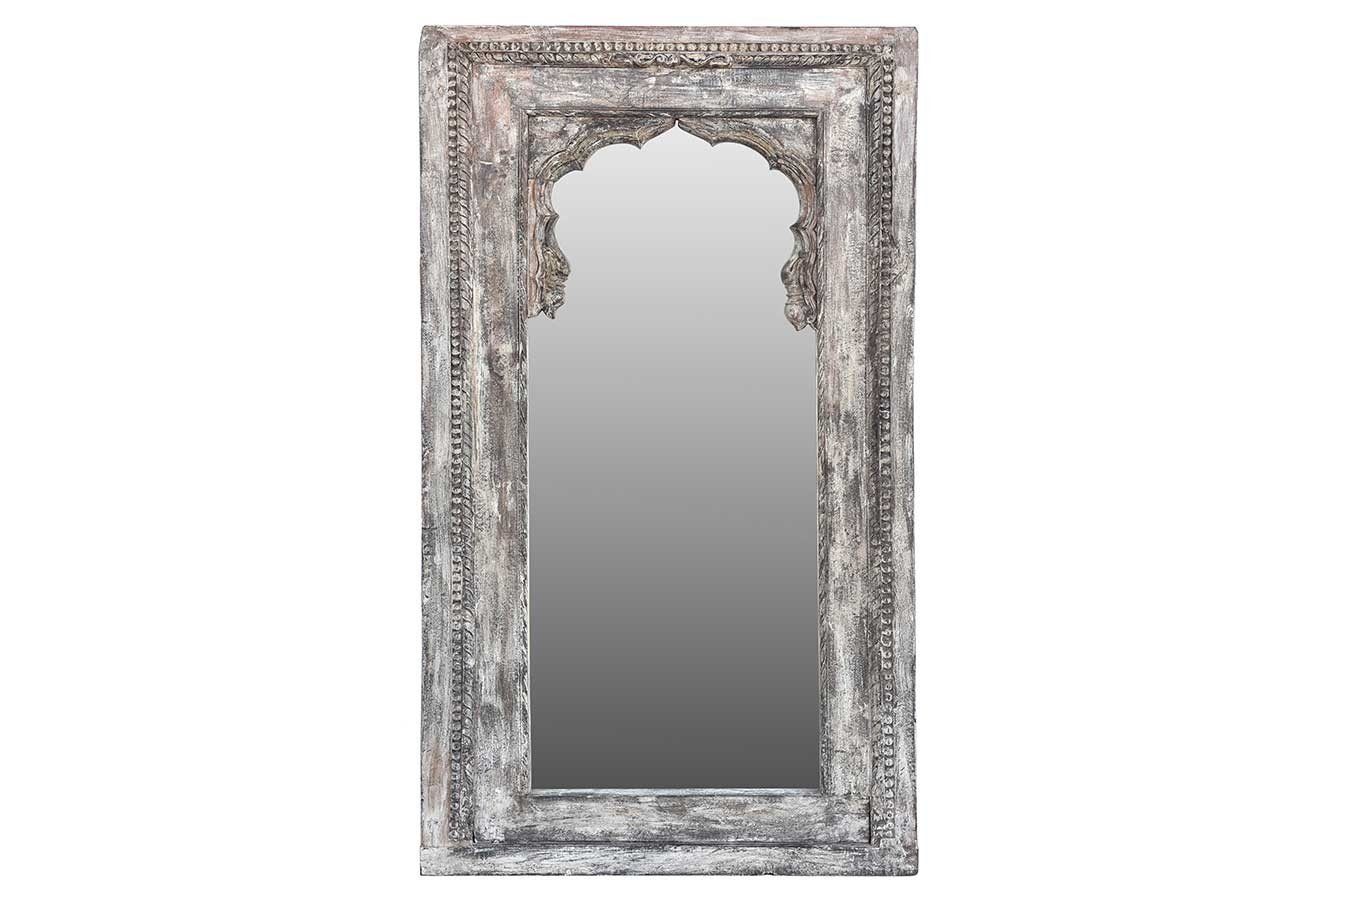 daslagerhaus living Wandspiegel Spiegel Vintage grau weiß